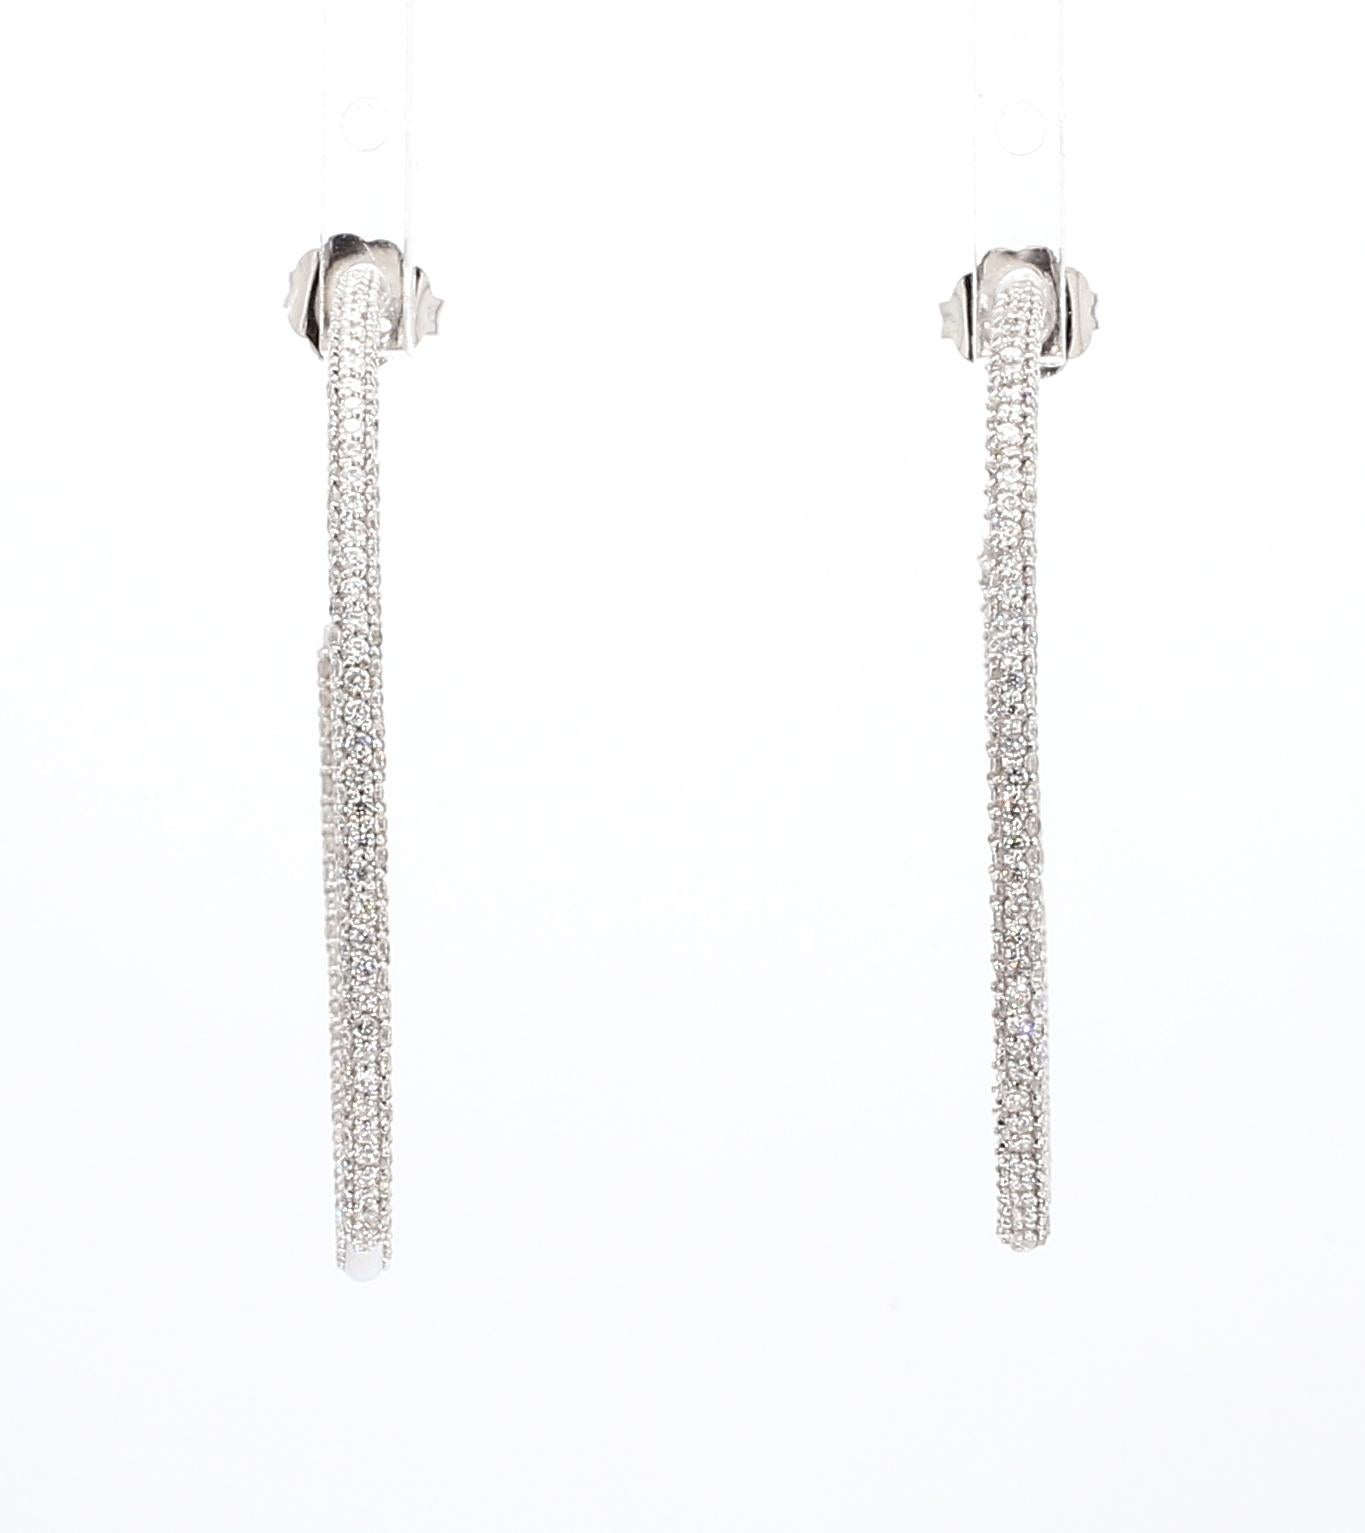 Natural Diamond Hoop Earrings 2.14ctw Inside Out Hoop Earrings Three Row 14K WG For Sale 4